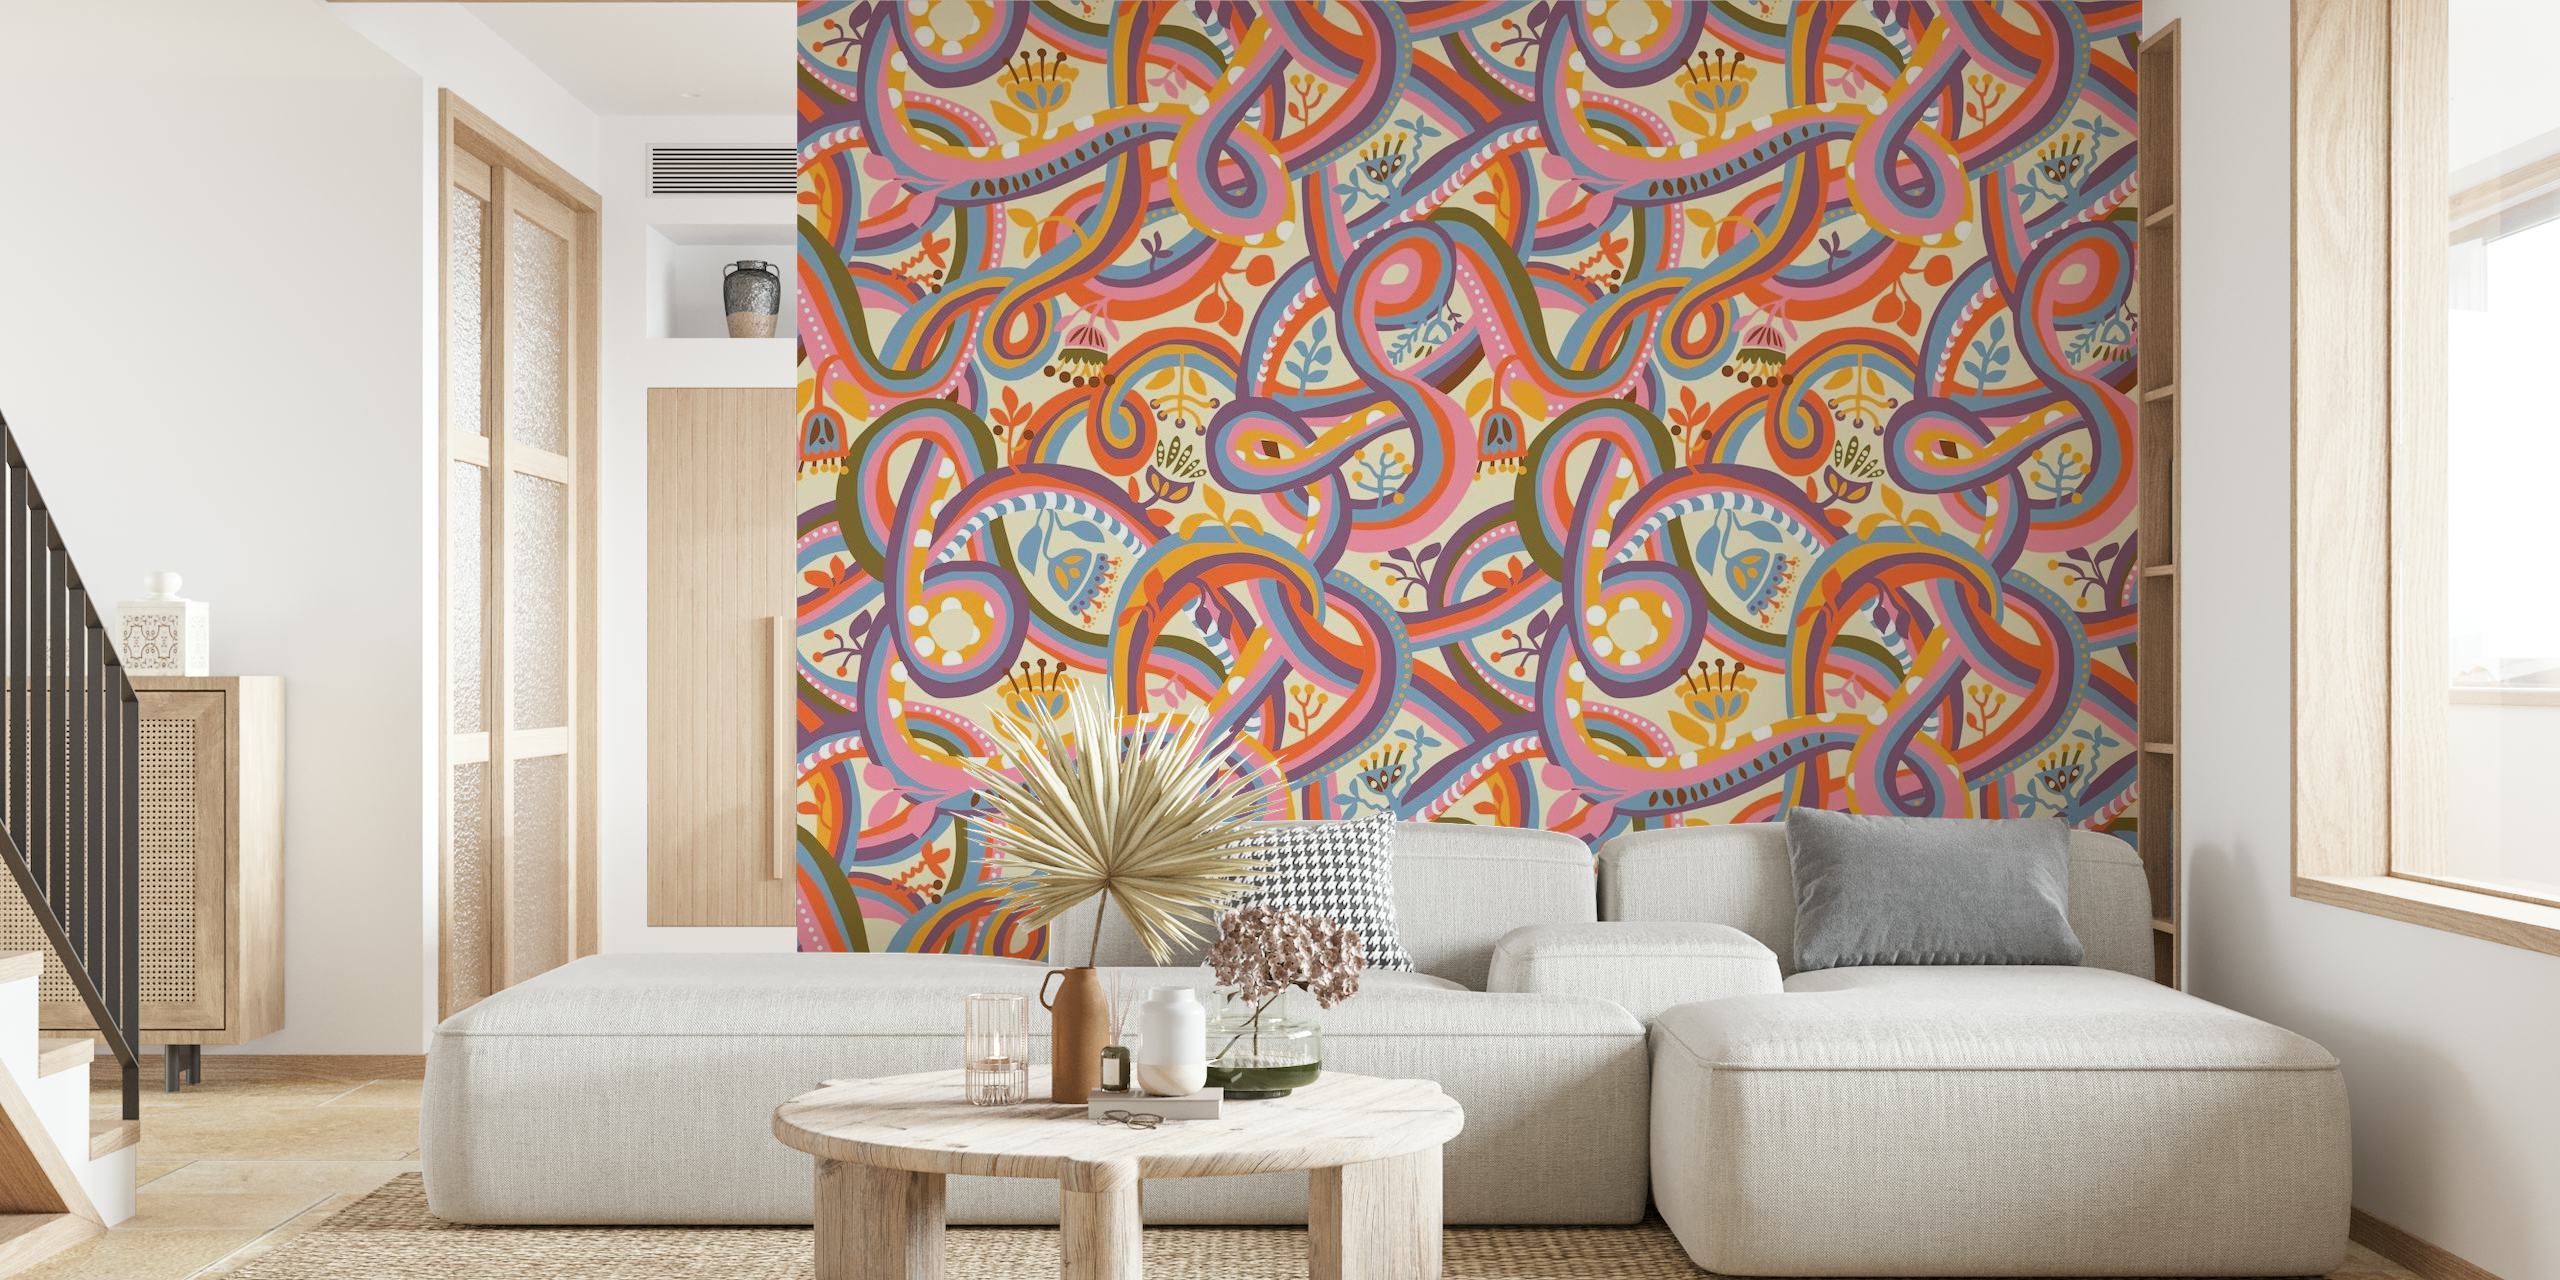 Psykedelisk creeper-mønster vægmaleri med sammenflettede vinstokke i varme nuancer